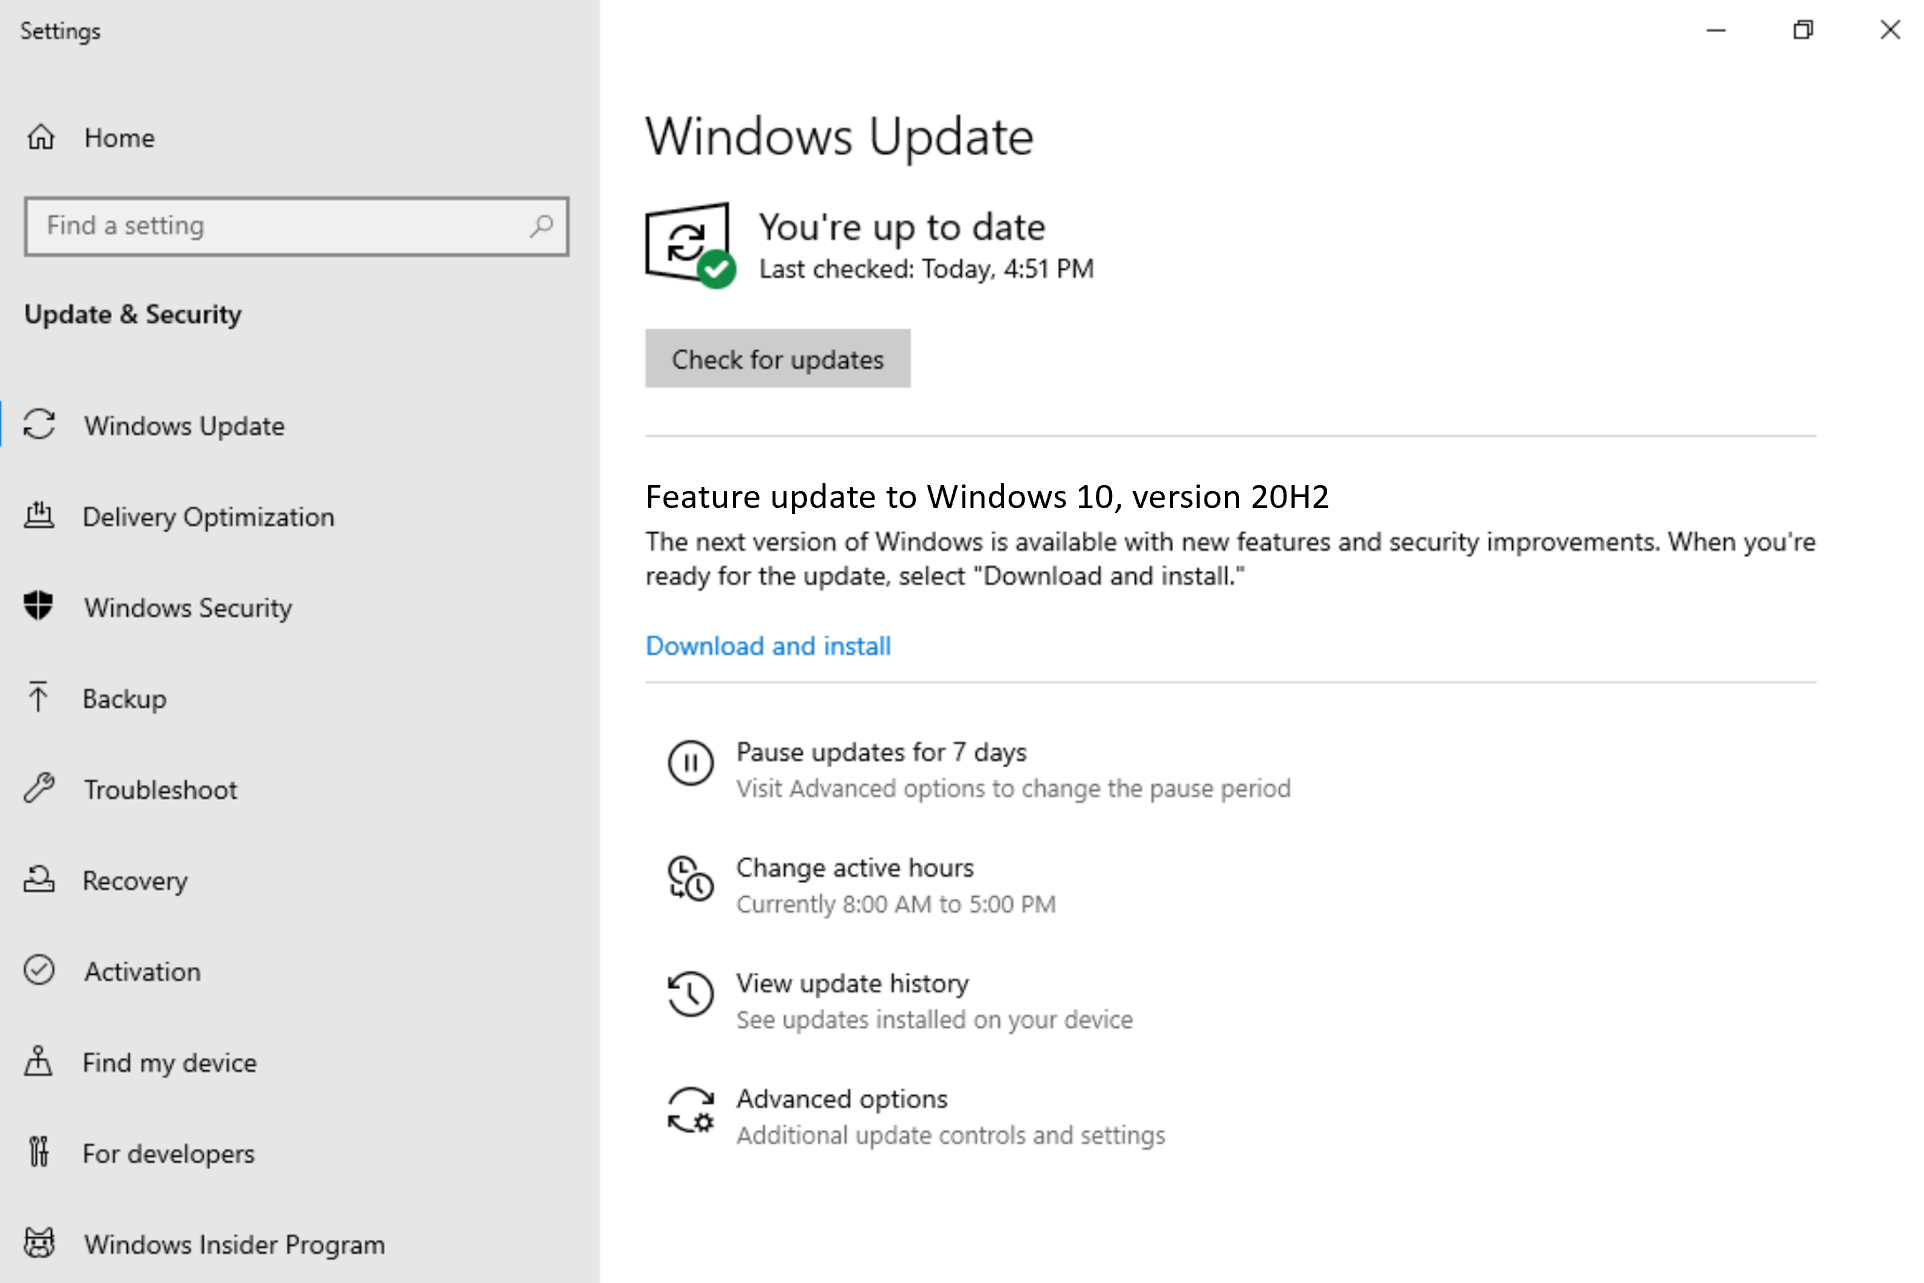 Windows 10 Insider Preview Beta Channel Build 19042.330 (20H2) June 16 3c2e12122dbb82b6b70956e27d9d2097.png